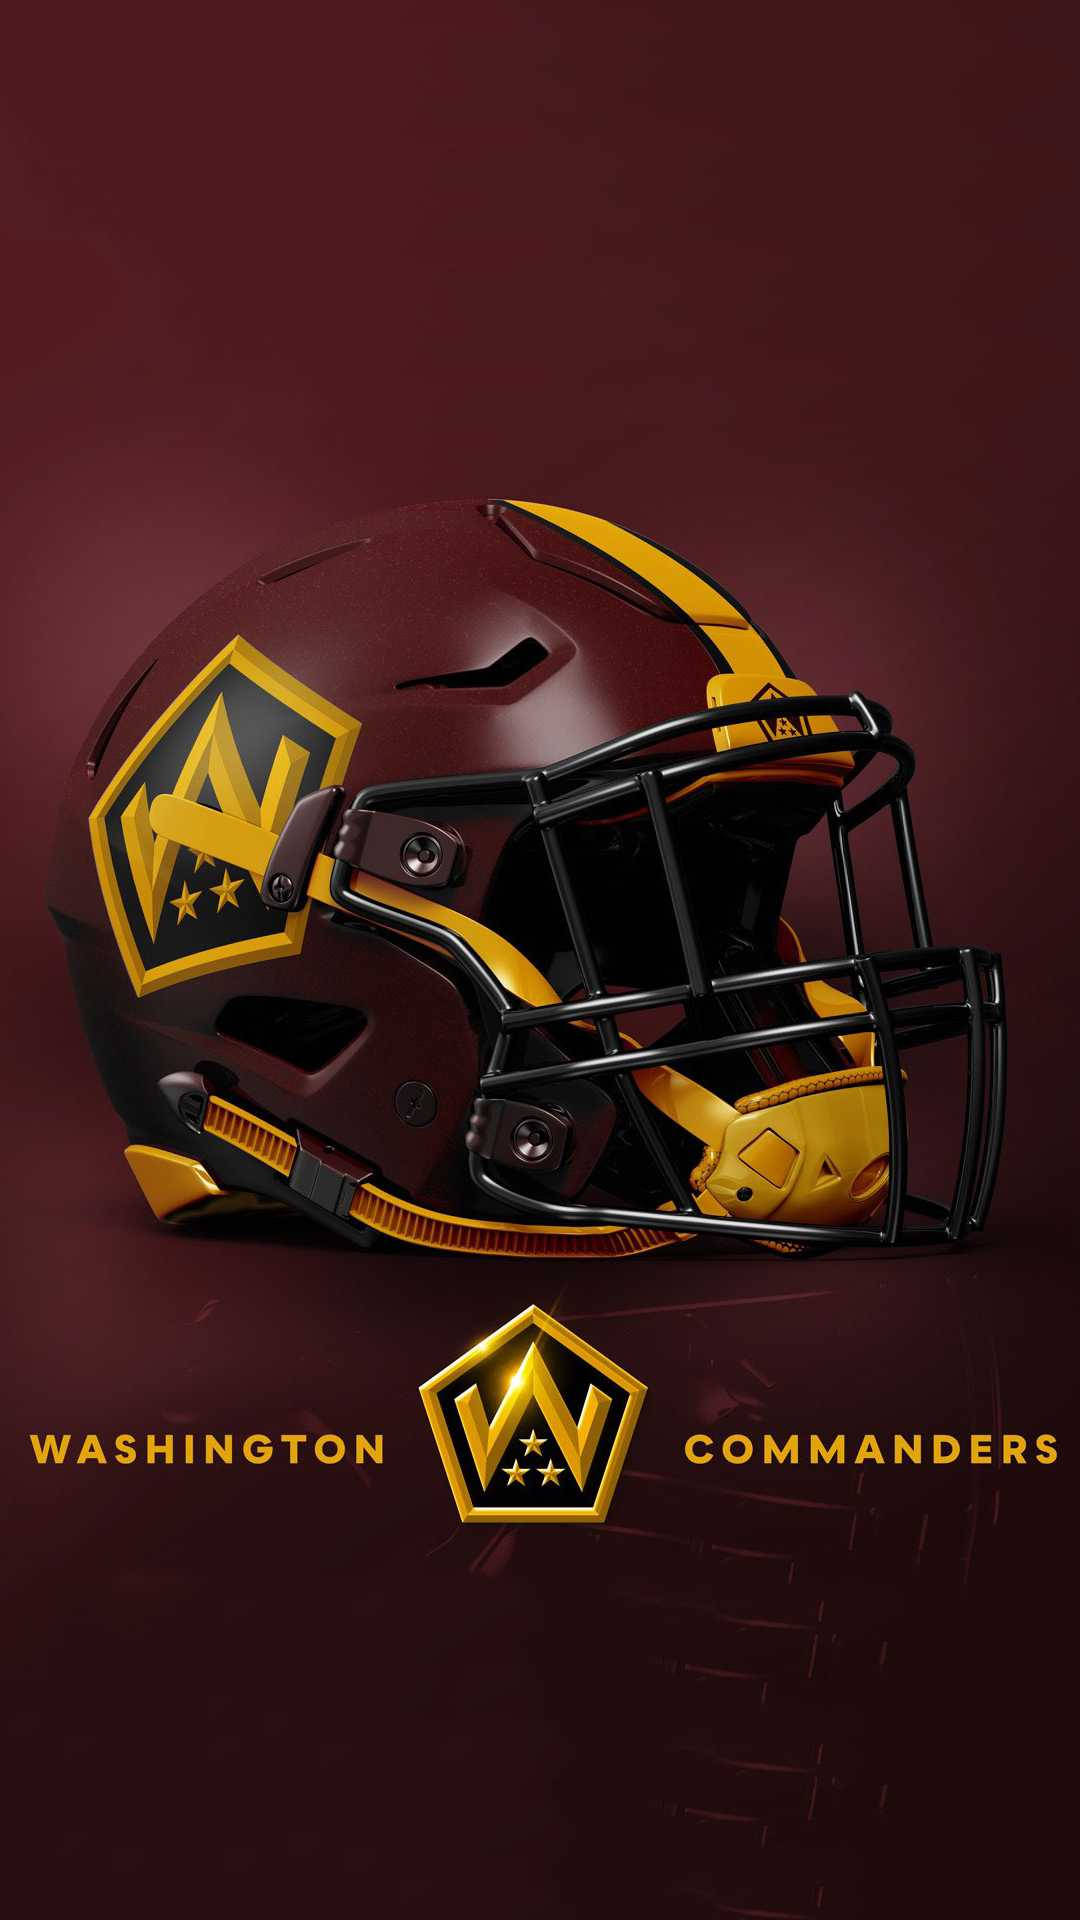 Washington Commanders Football Helmet